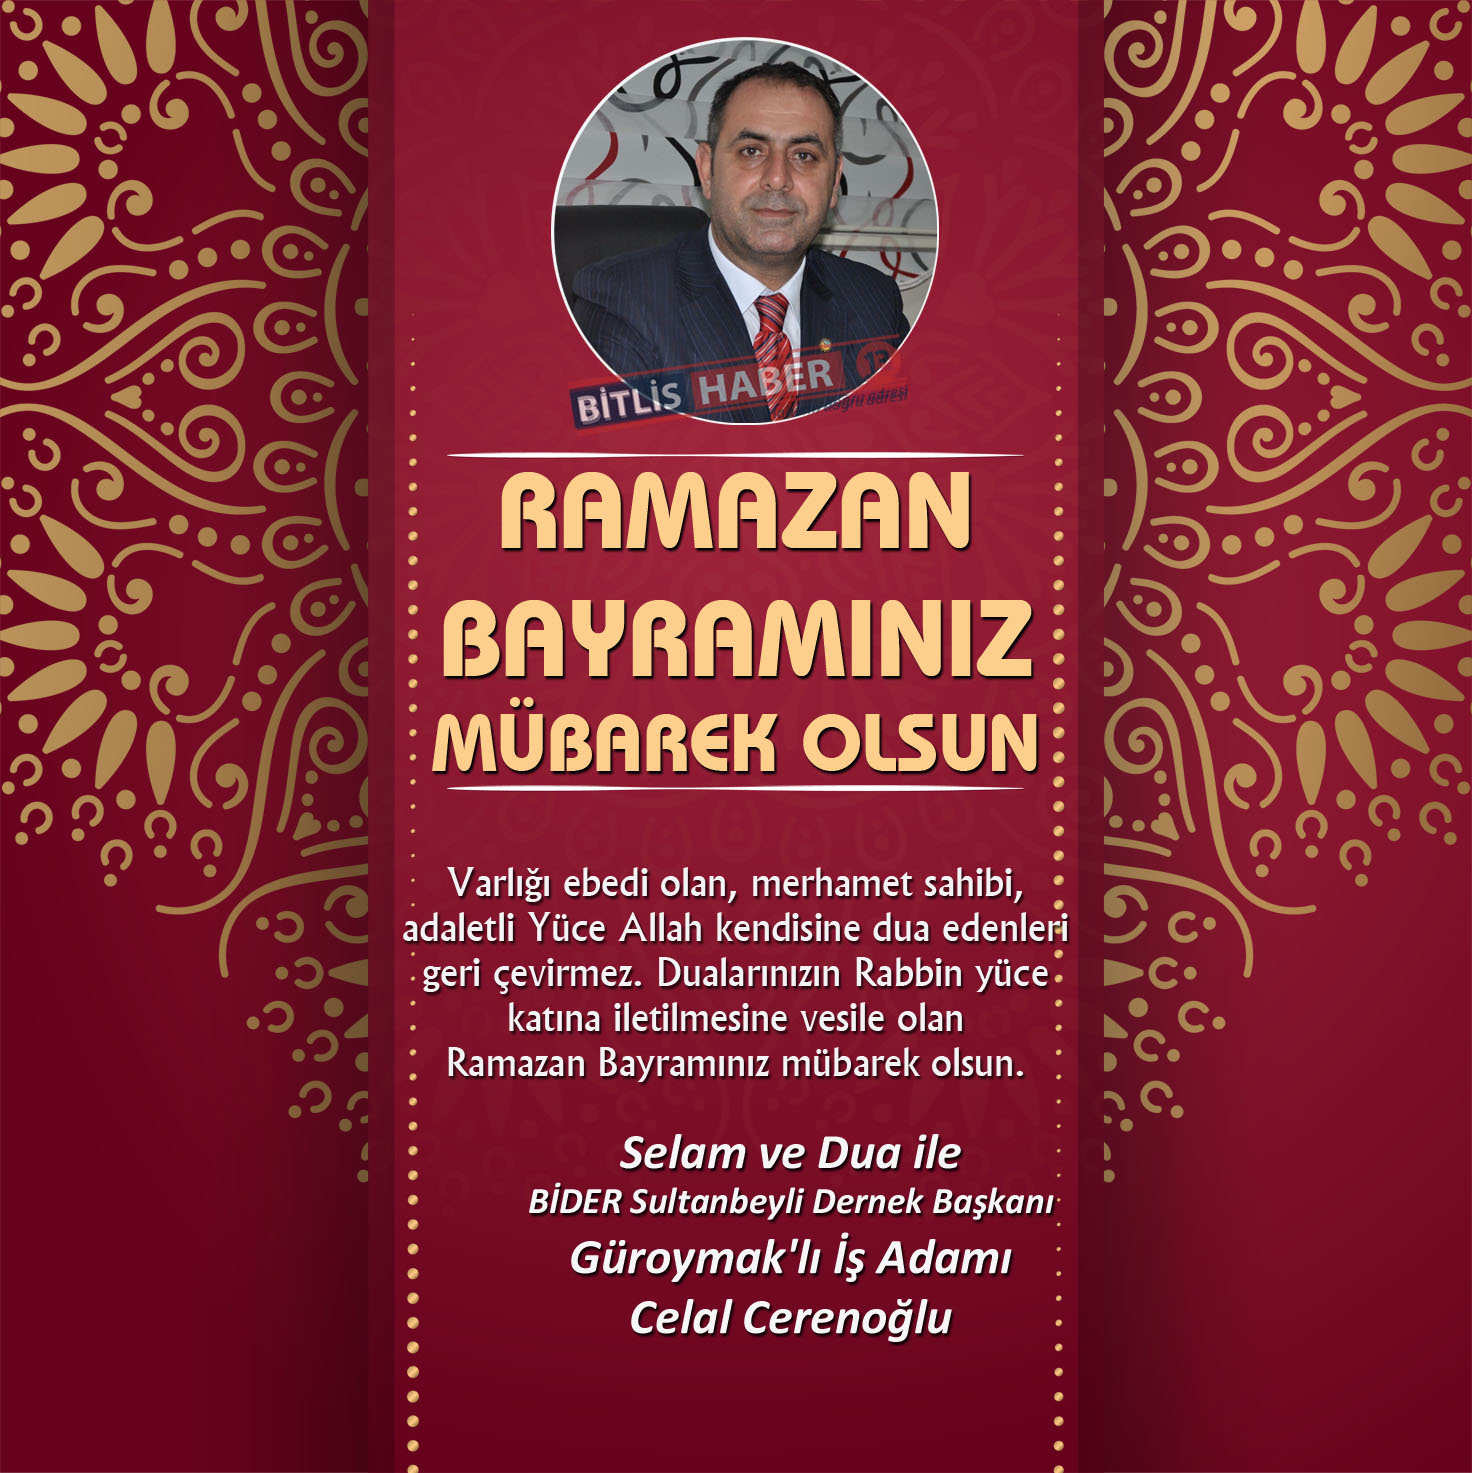 Bitlis ve ilçelerinde siyasi, kurum amirleri ve iş adamlarından Ramazan Bayramı sebebiyle birer mesaj yayınladı.
